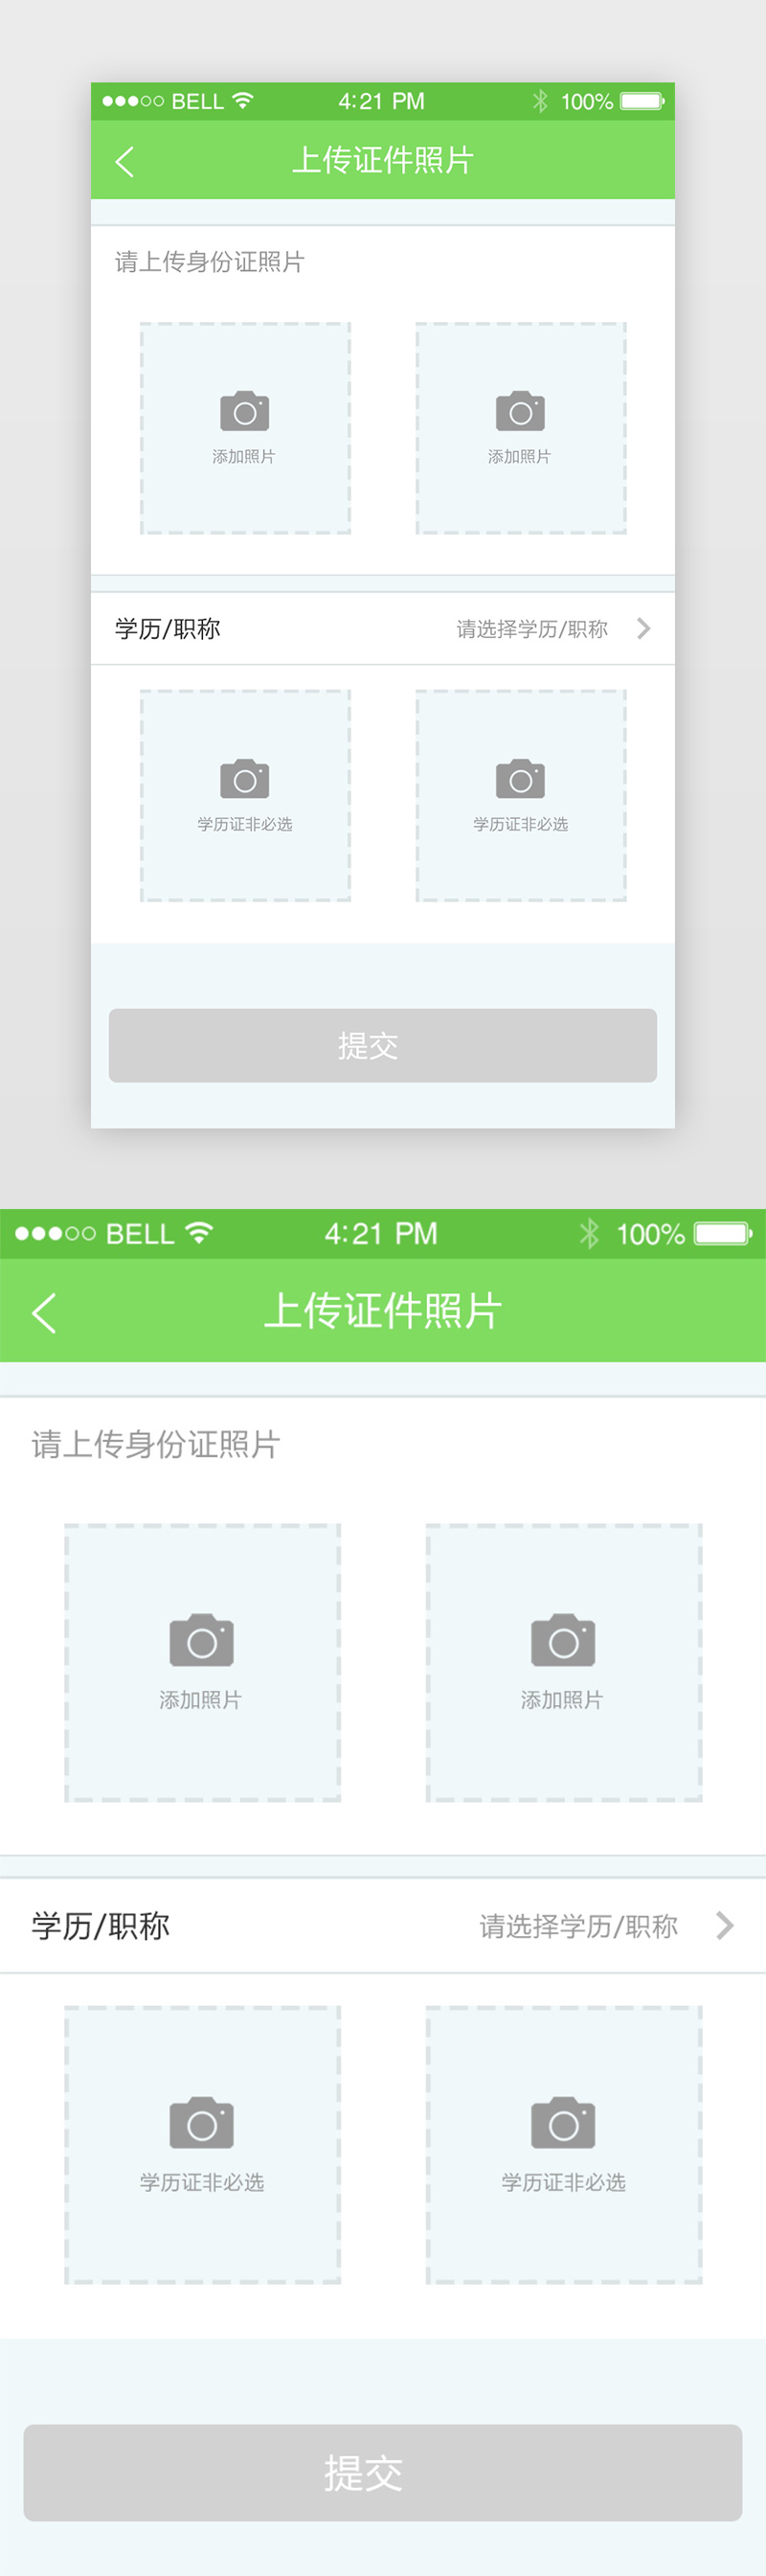 绿色简约风格证件上传账户认证移动UI设计图片